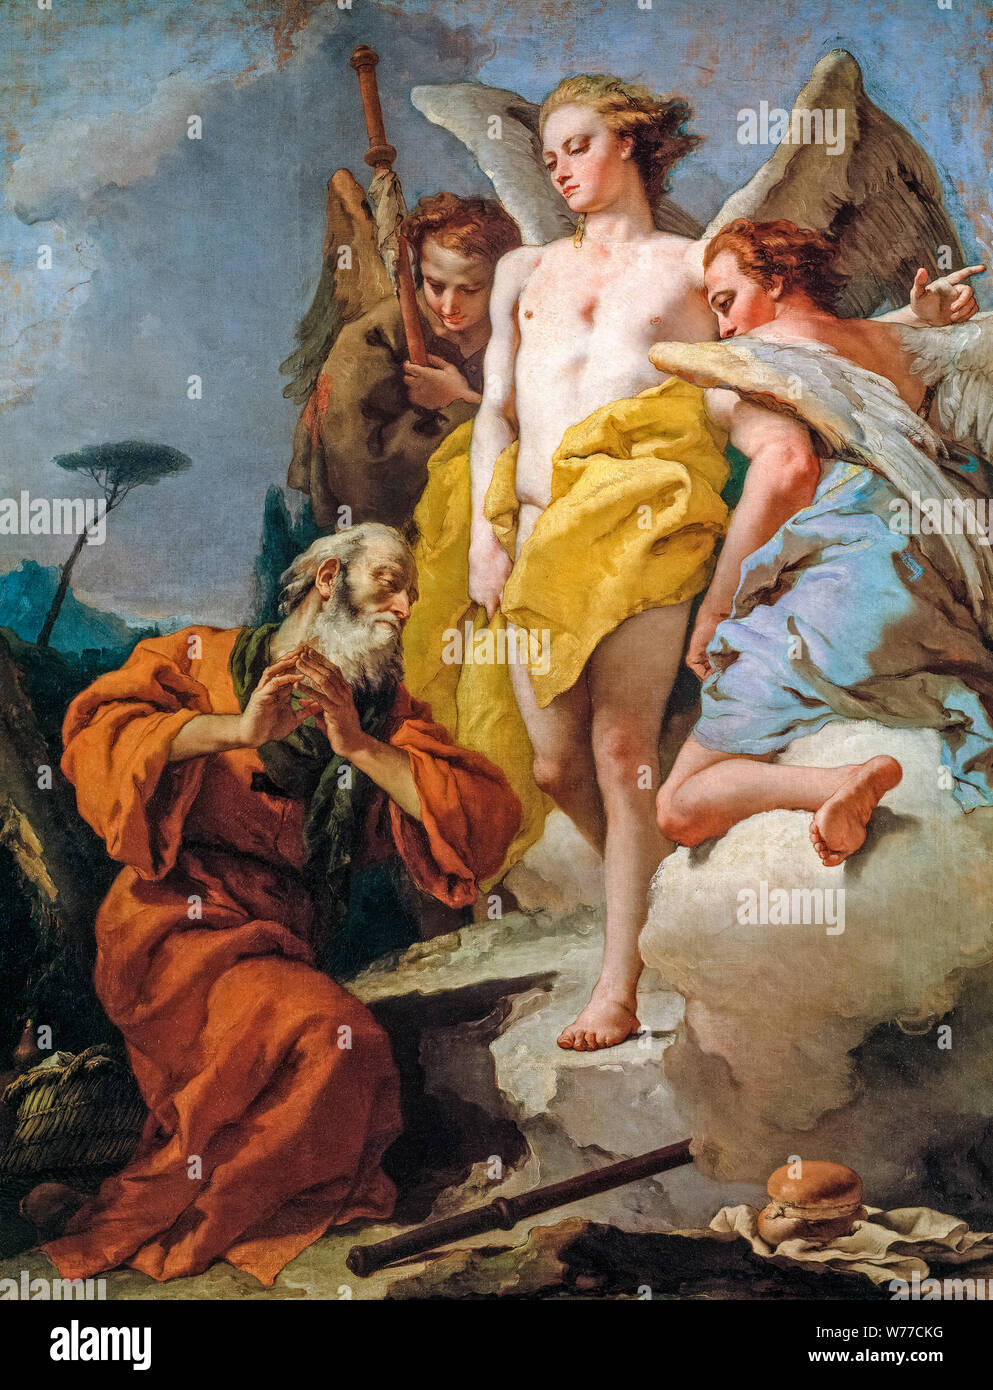 Giovanni Battista Tiepolo, pintura, Abraham y los tres ángeles, 1730 Foto de stock